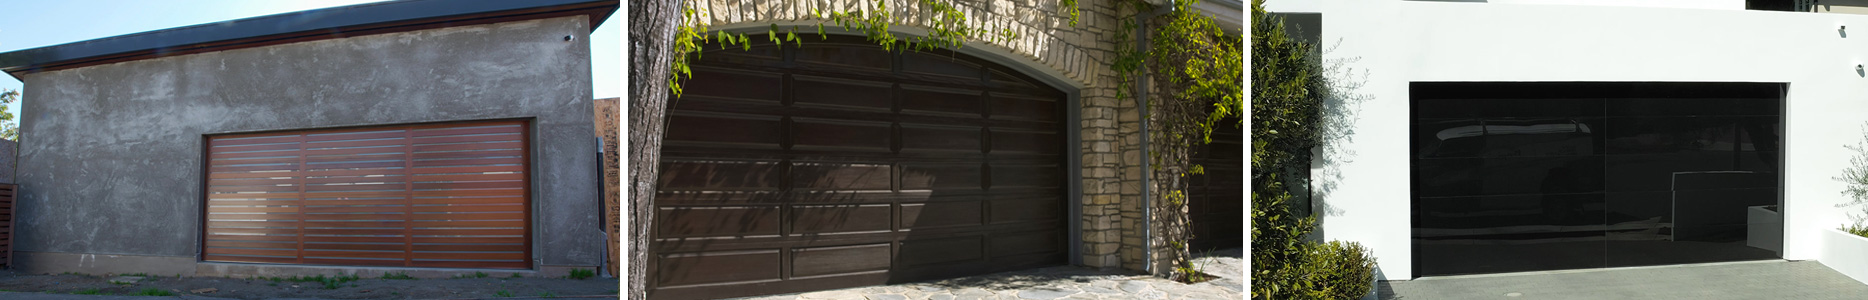 Precision Garage Doors Of Southern, 16×12 Garage Door